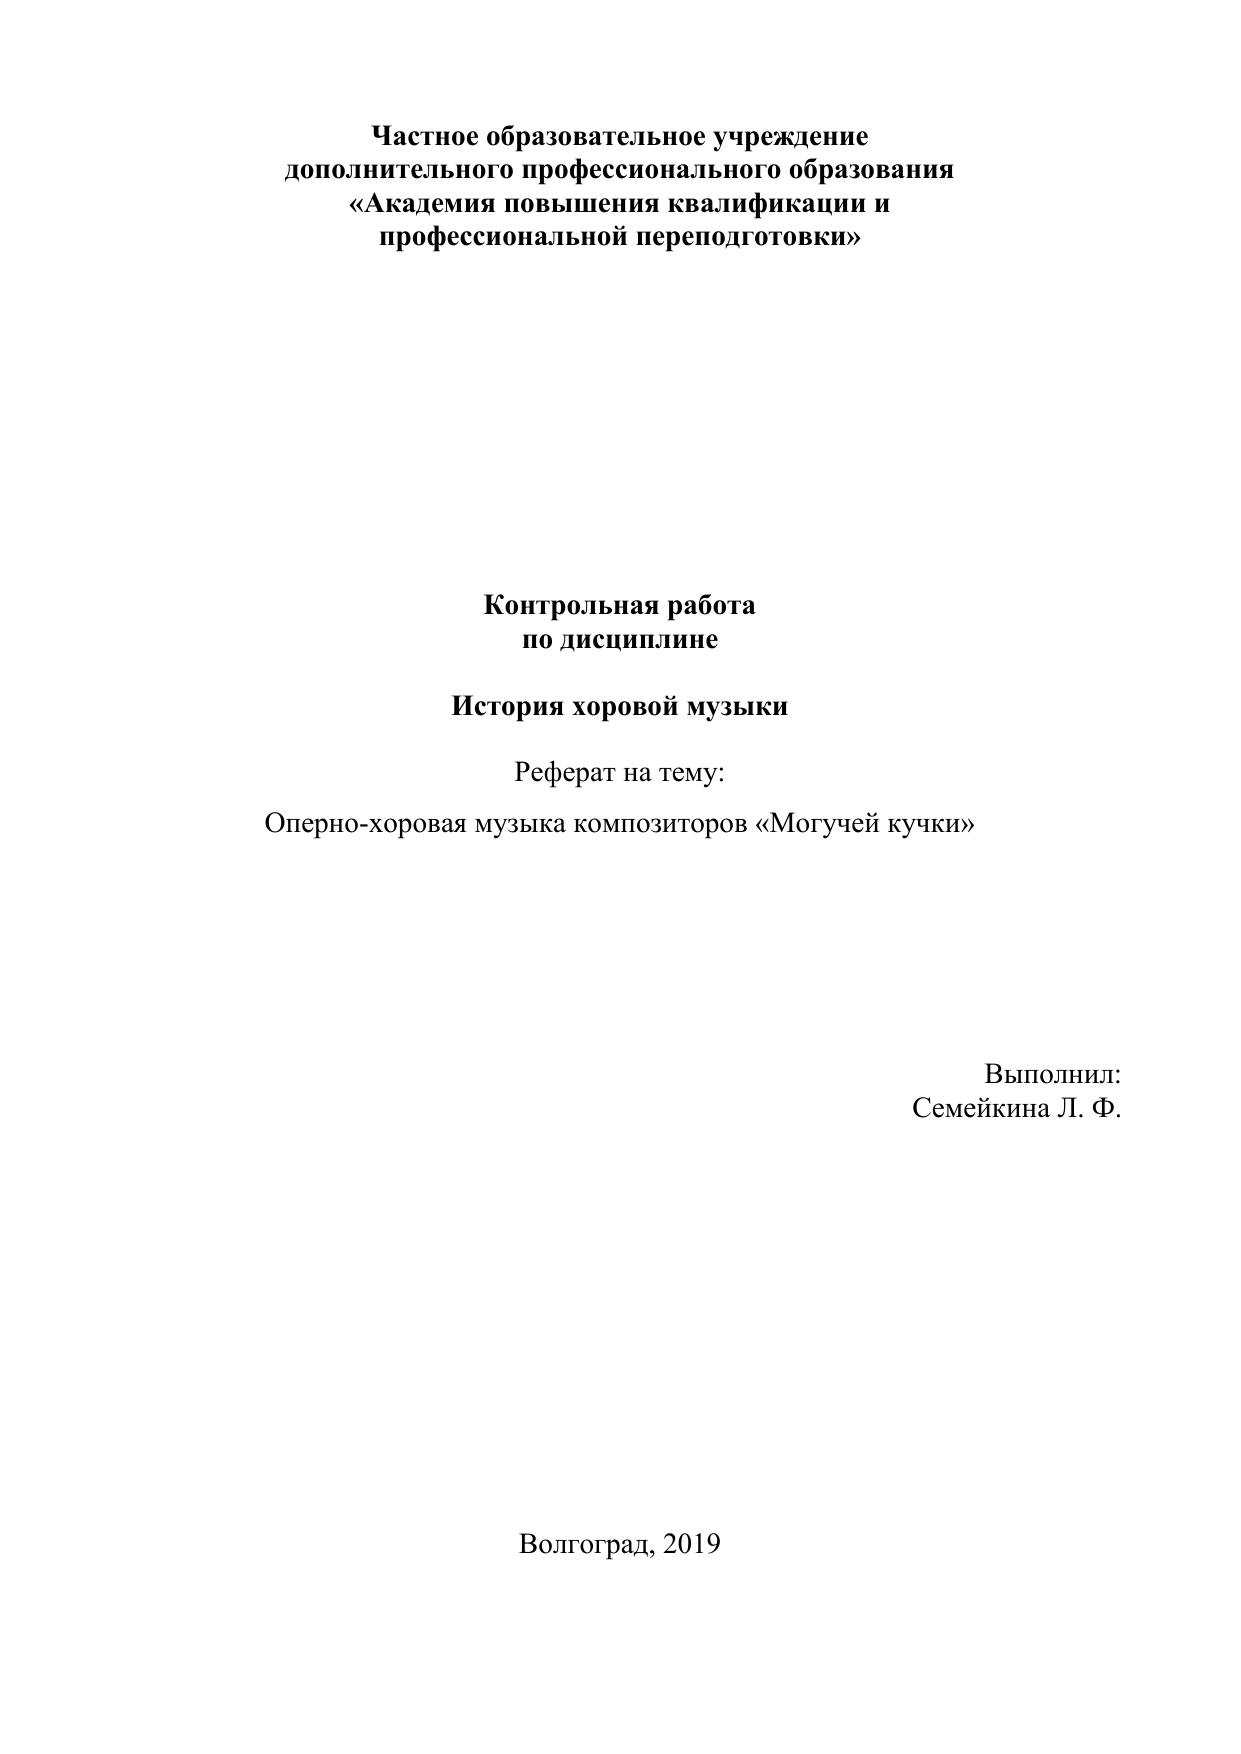 Контрольная работа по теме Российские композиторы 